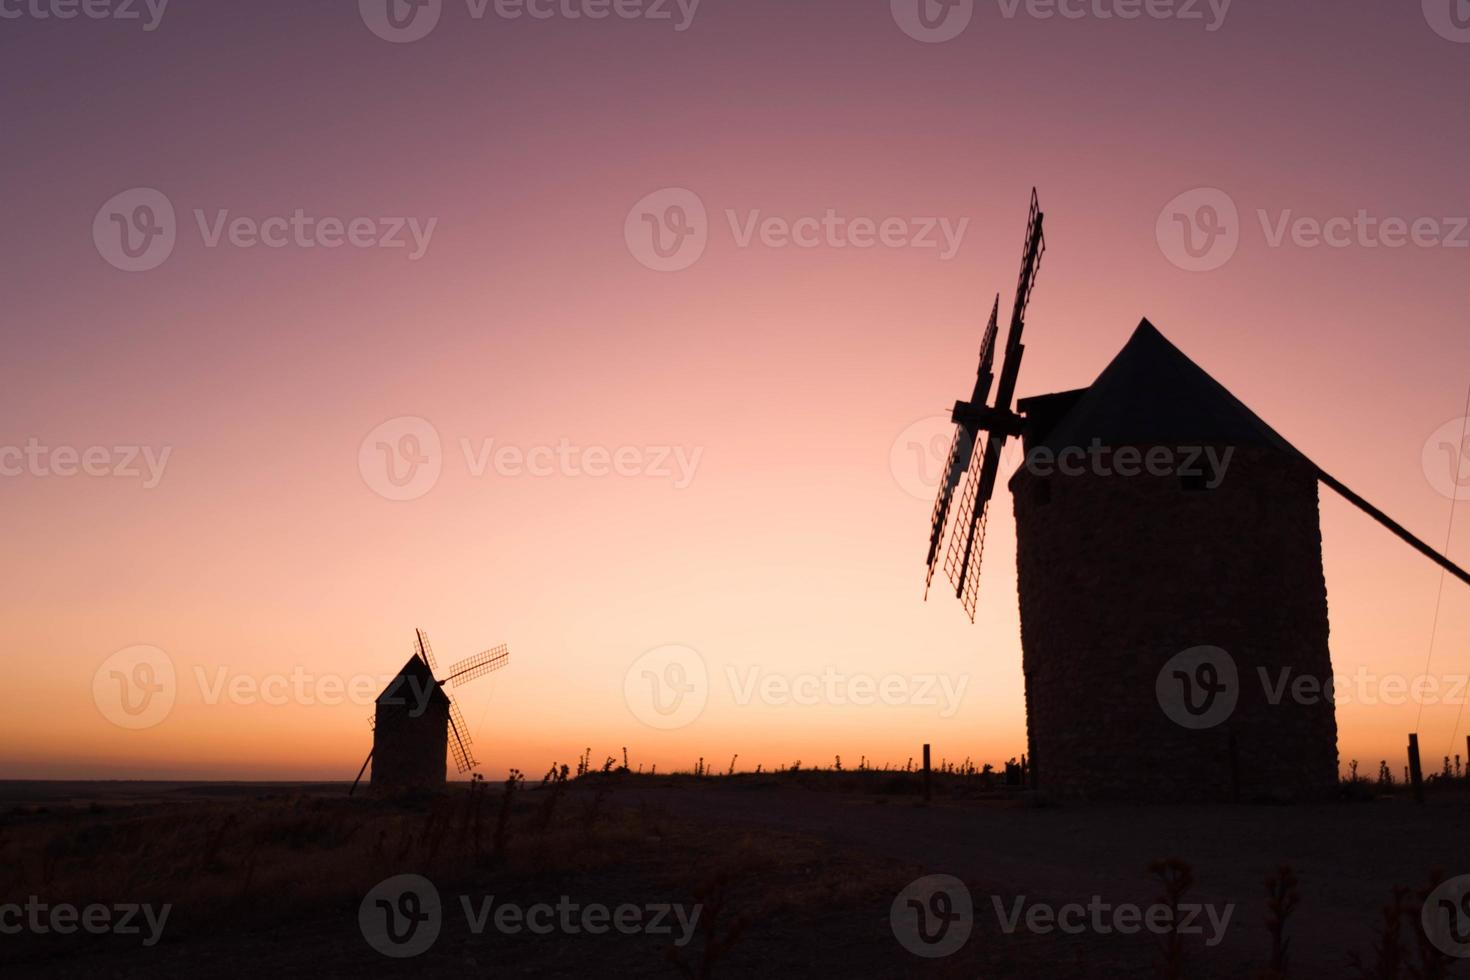 velhos moinhos de vento ao pôr do sol foto